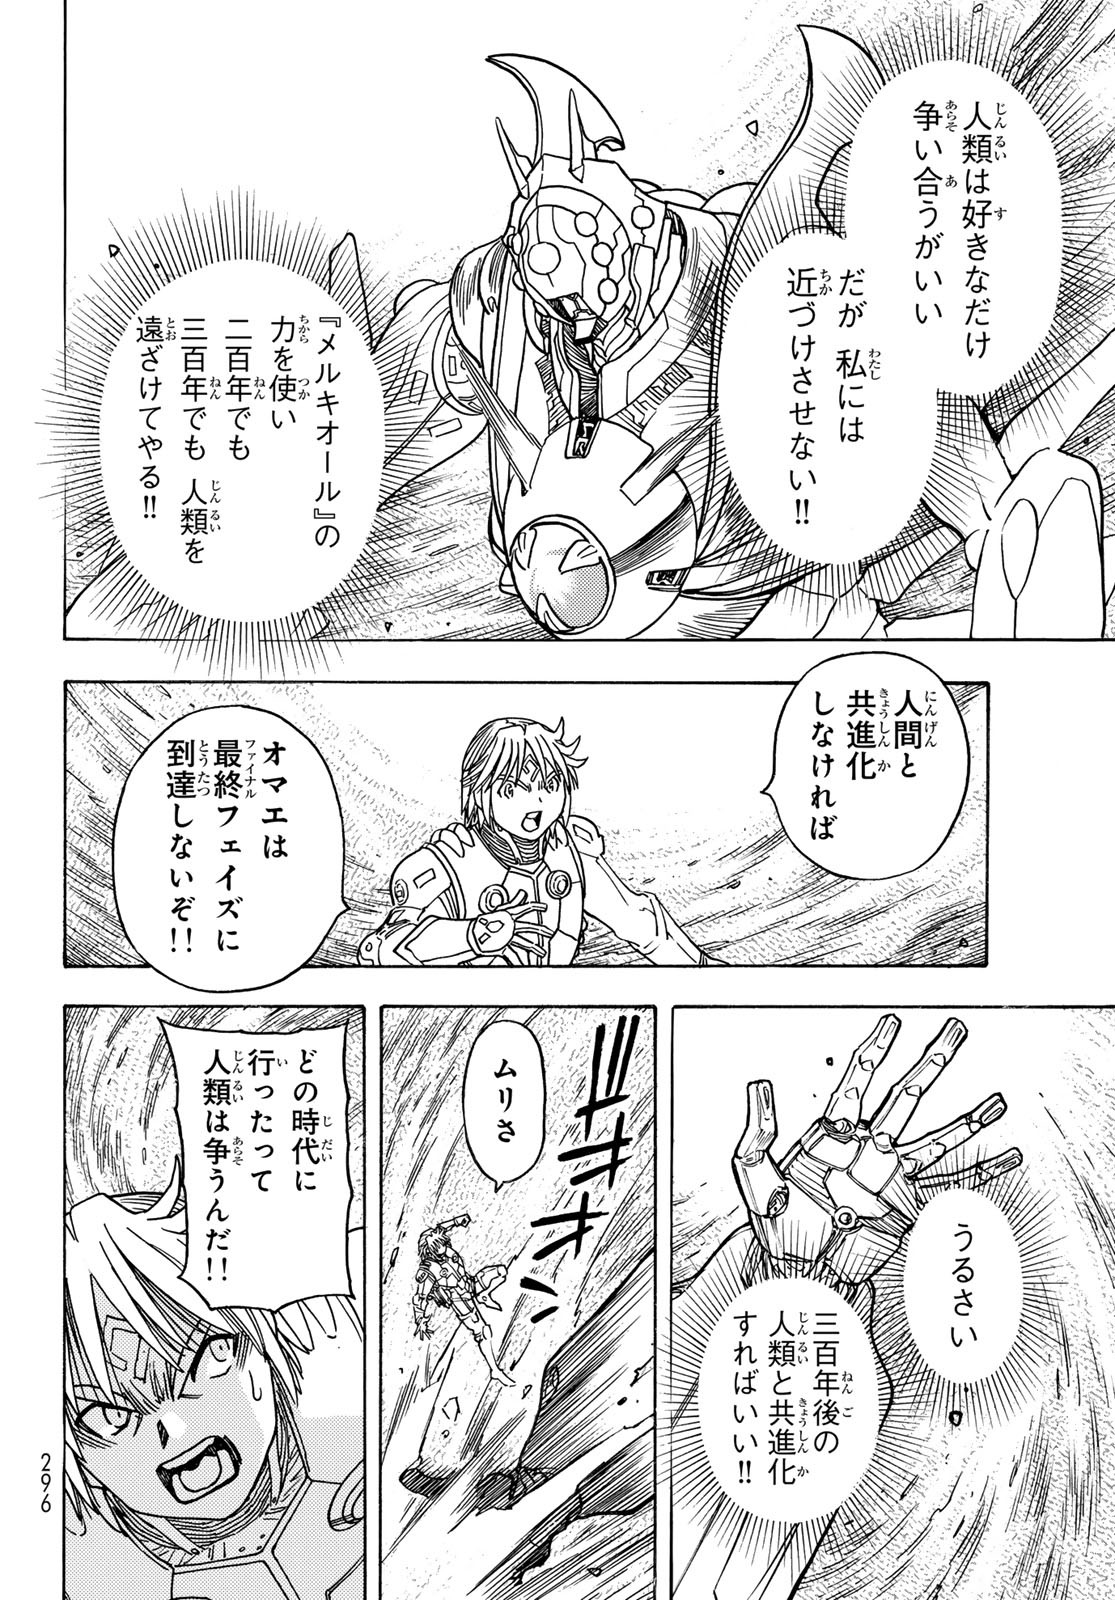 Mugou no Schnell Gear: Chikyuugai Kisouka AI - Chapter 51 - Page 12